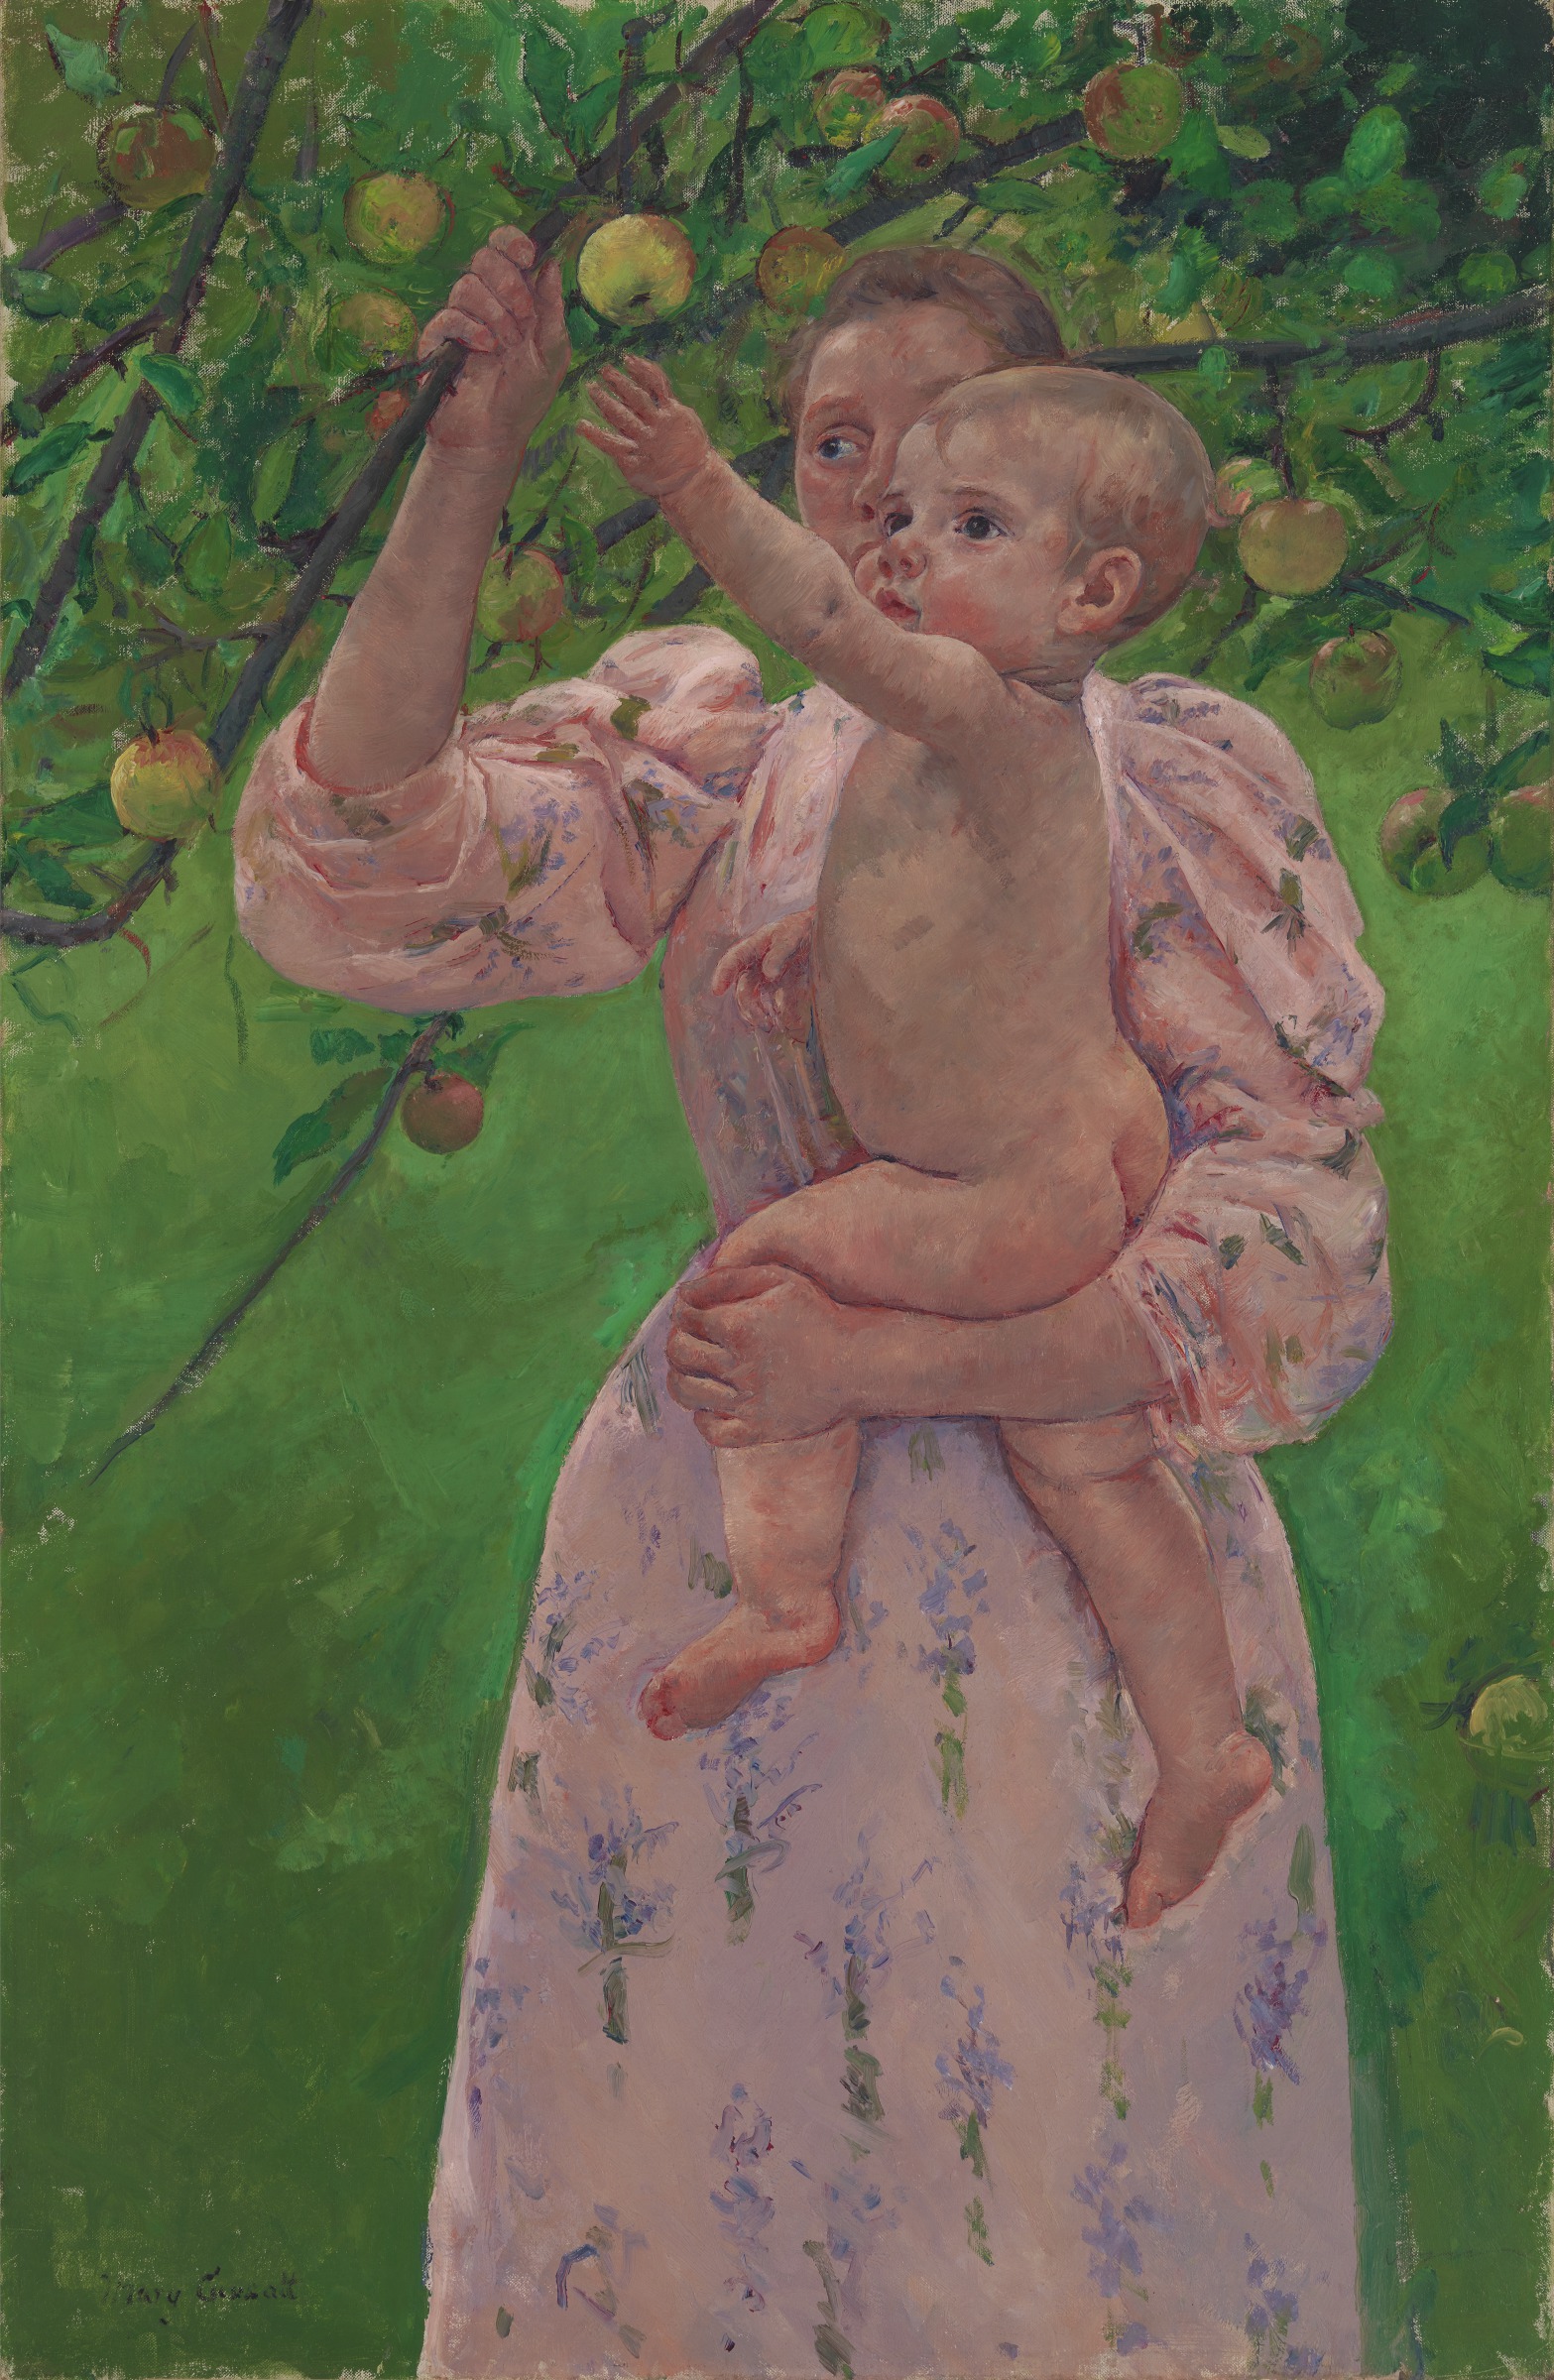 Niño agarrando una fruta by Mary Cassatt - 1893 - 100.33 x 65.41 cm Museo de Bellas Artes de Virginia